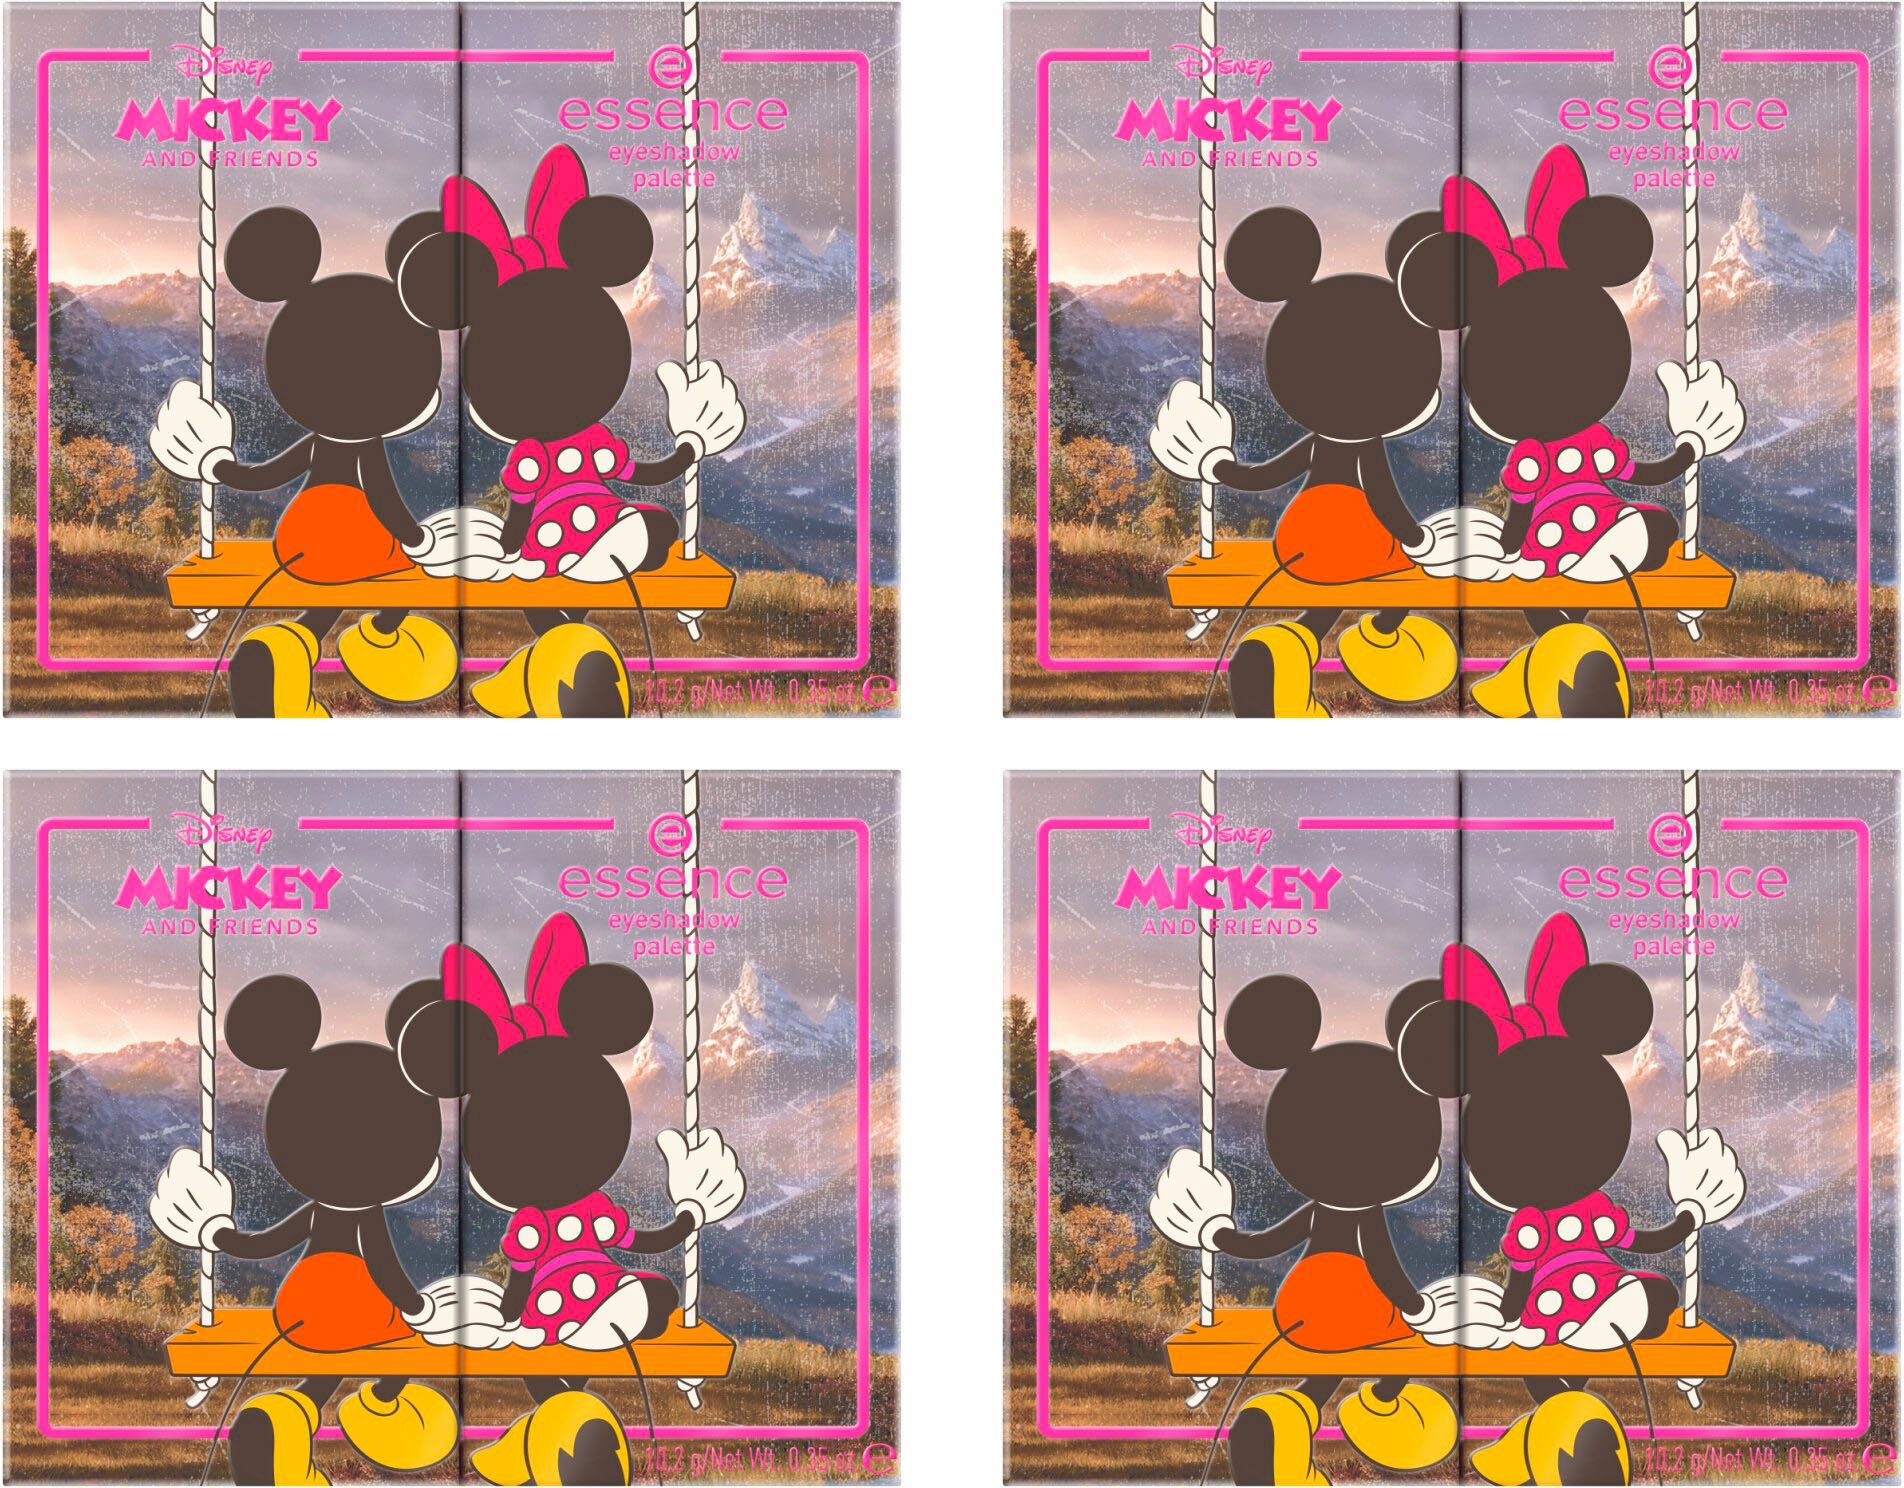 and eyeshadow Lidschatten-Palette Looks Friends Disney für Essence abwechslungsreiche Mickey Augen-Make-Up palette,